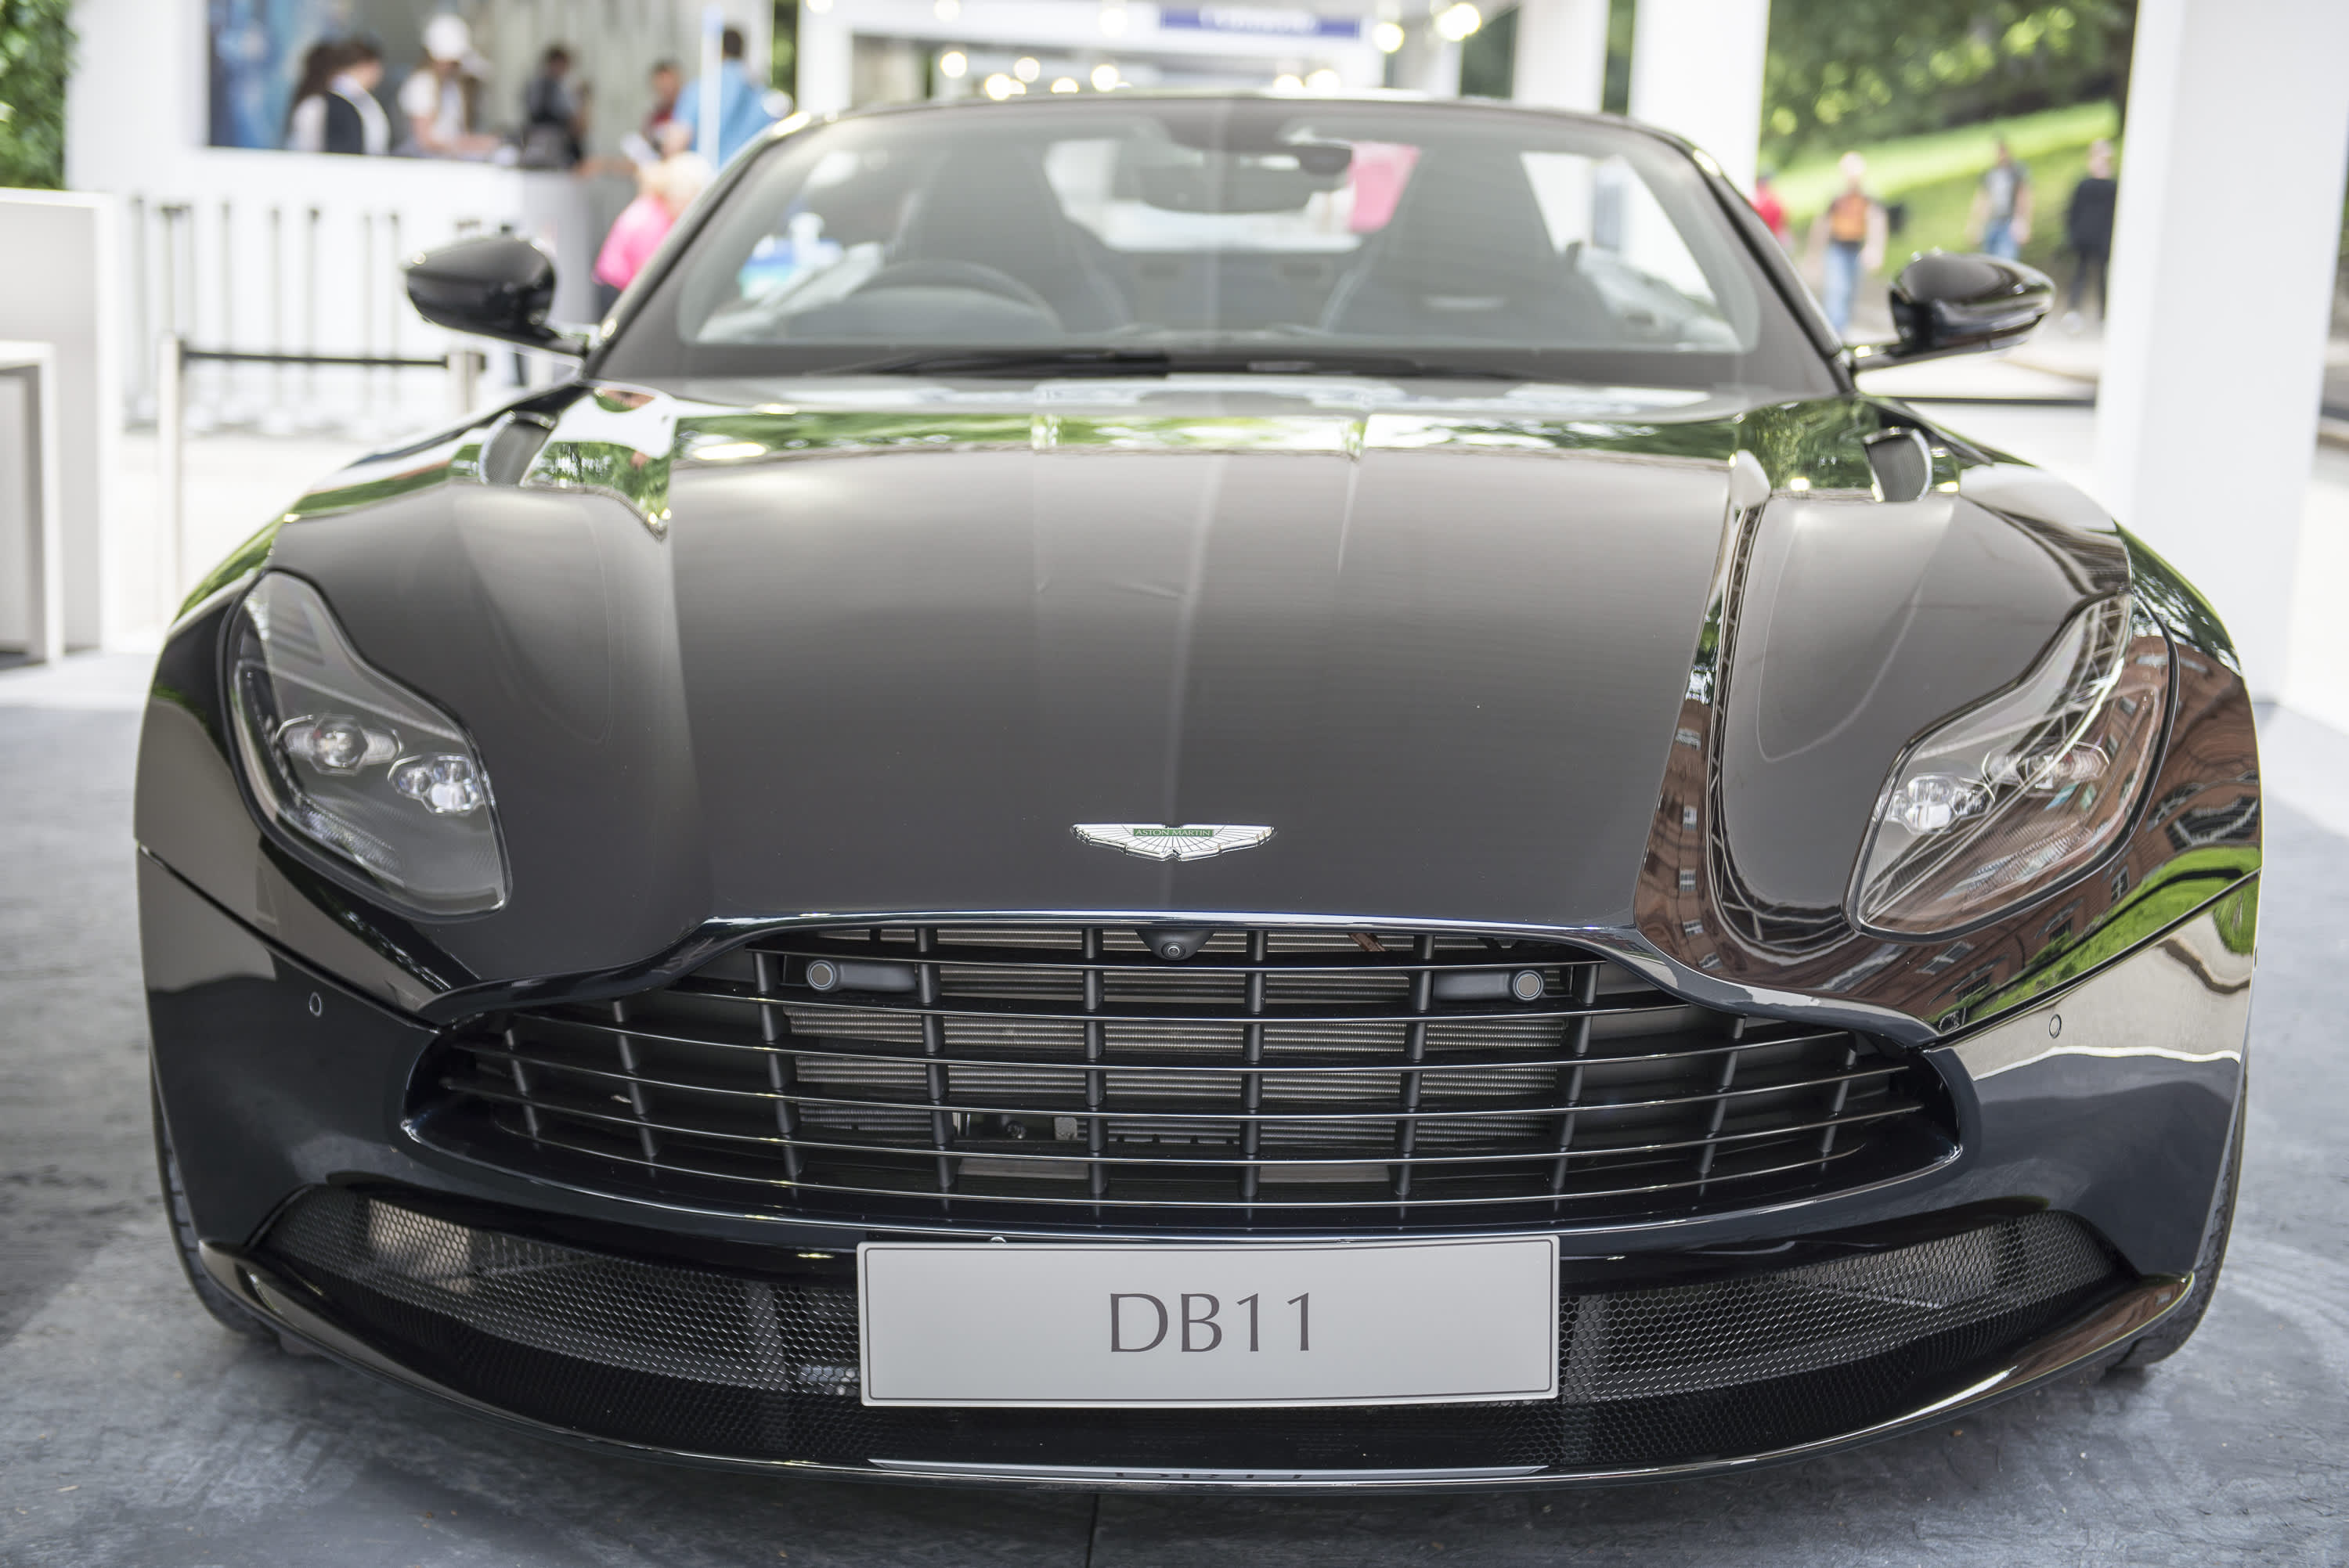 Die Aktien des Luxusautoherstellers Aston Martin fielen um 11 %, da sich die Verluste fast verdoppelten